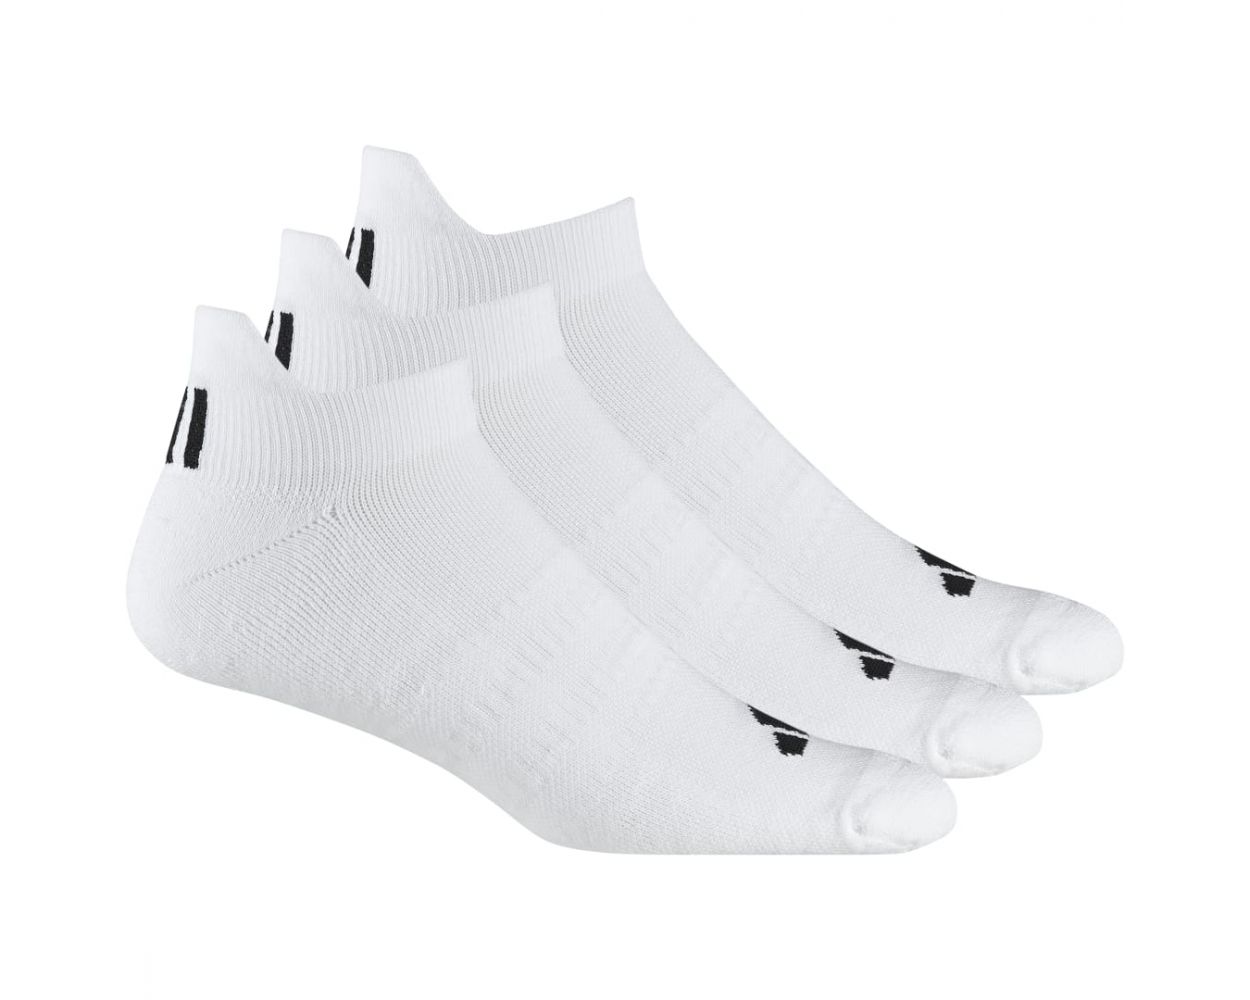 Adidas Men's Ankle Socks - White 3 Pack